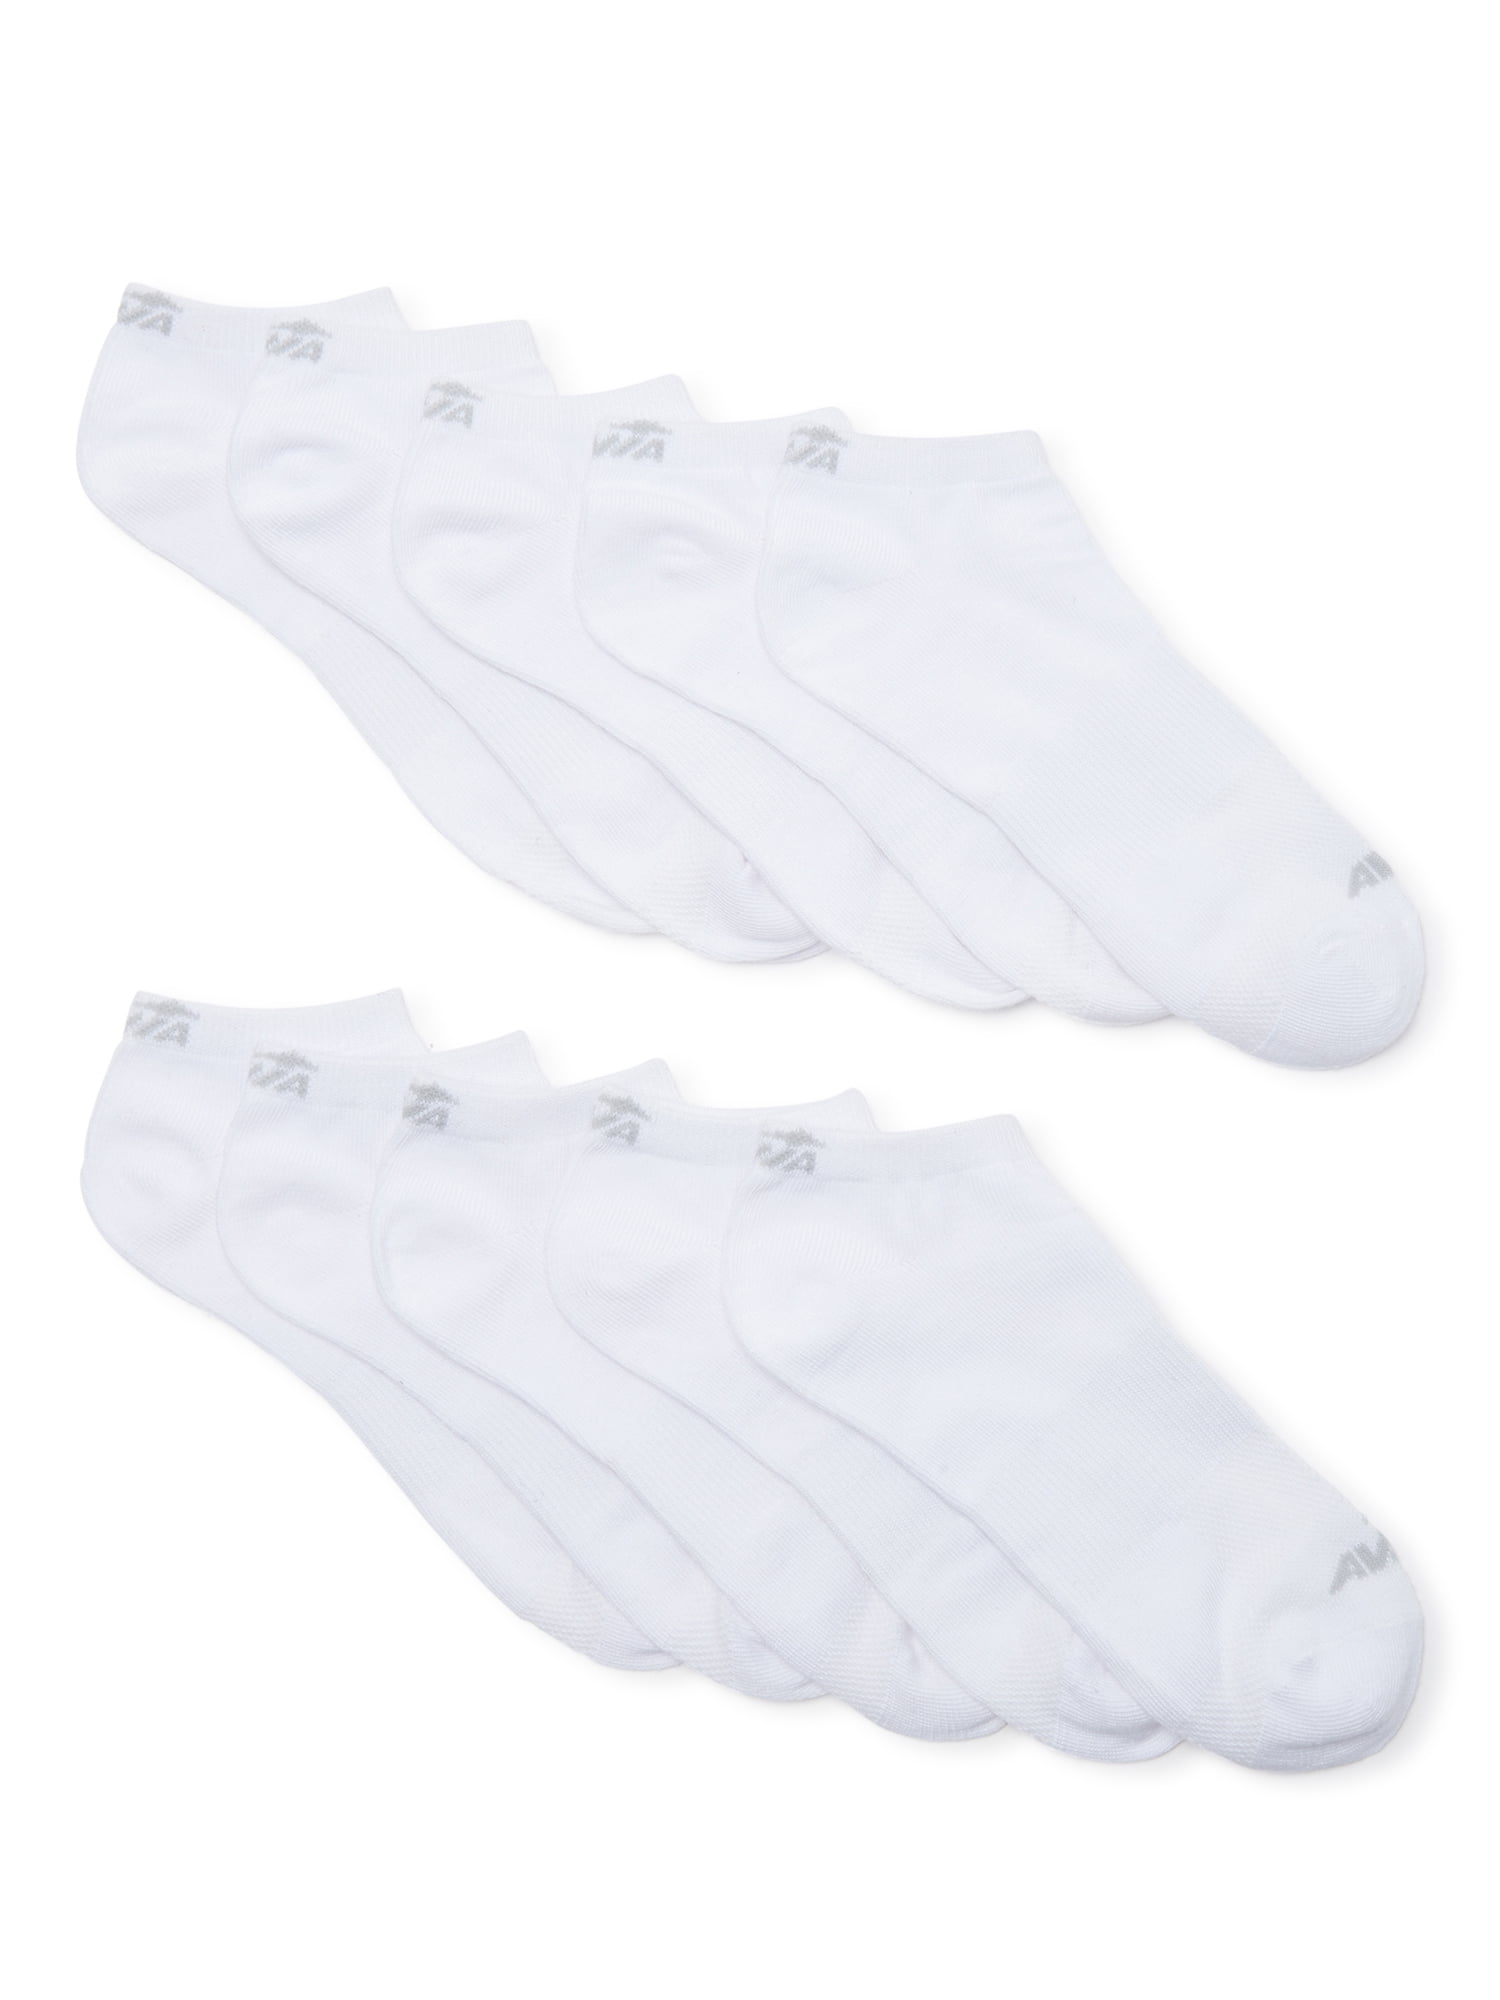 Avia Women's Performance Flatknit Lowcut Socks, 10-Pack - Walmart.com